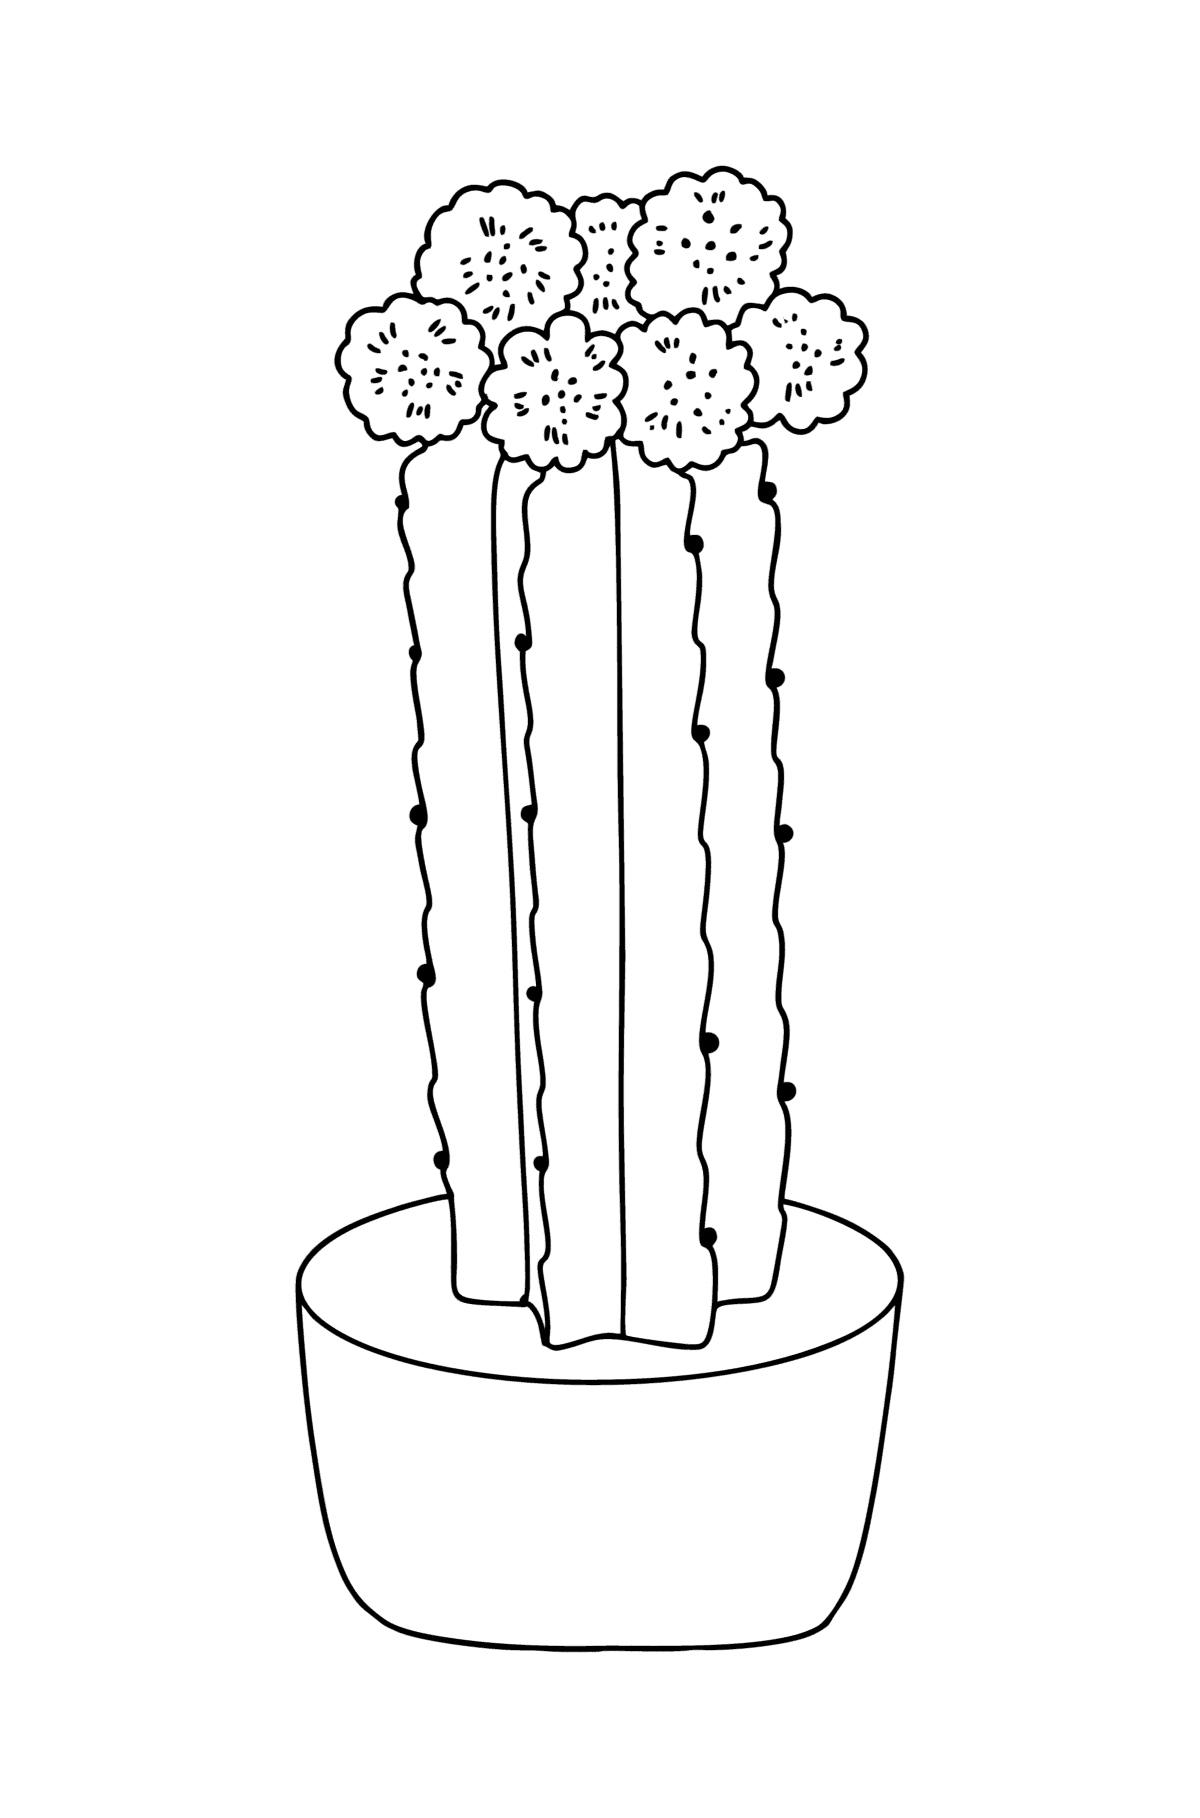 Coloriage Cactus avec des fleurs roses - Coloriages pour les Enfants